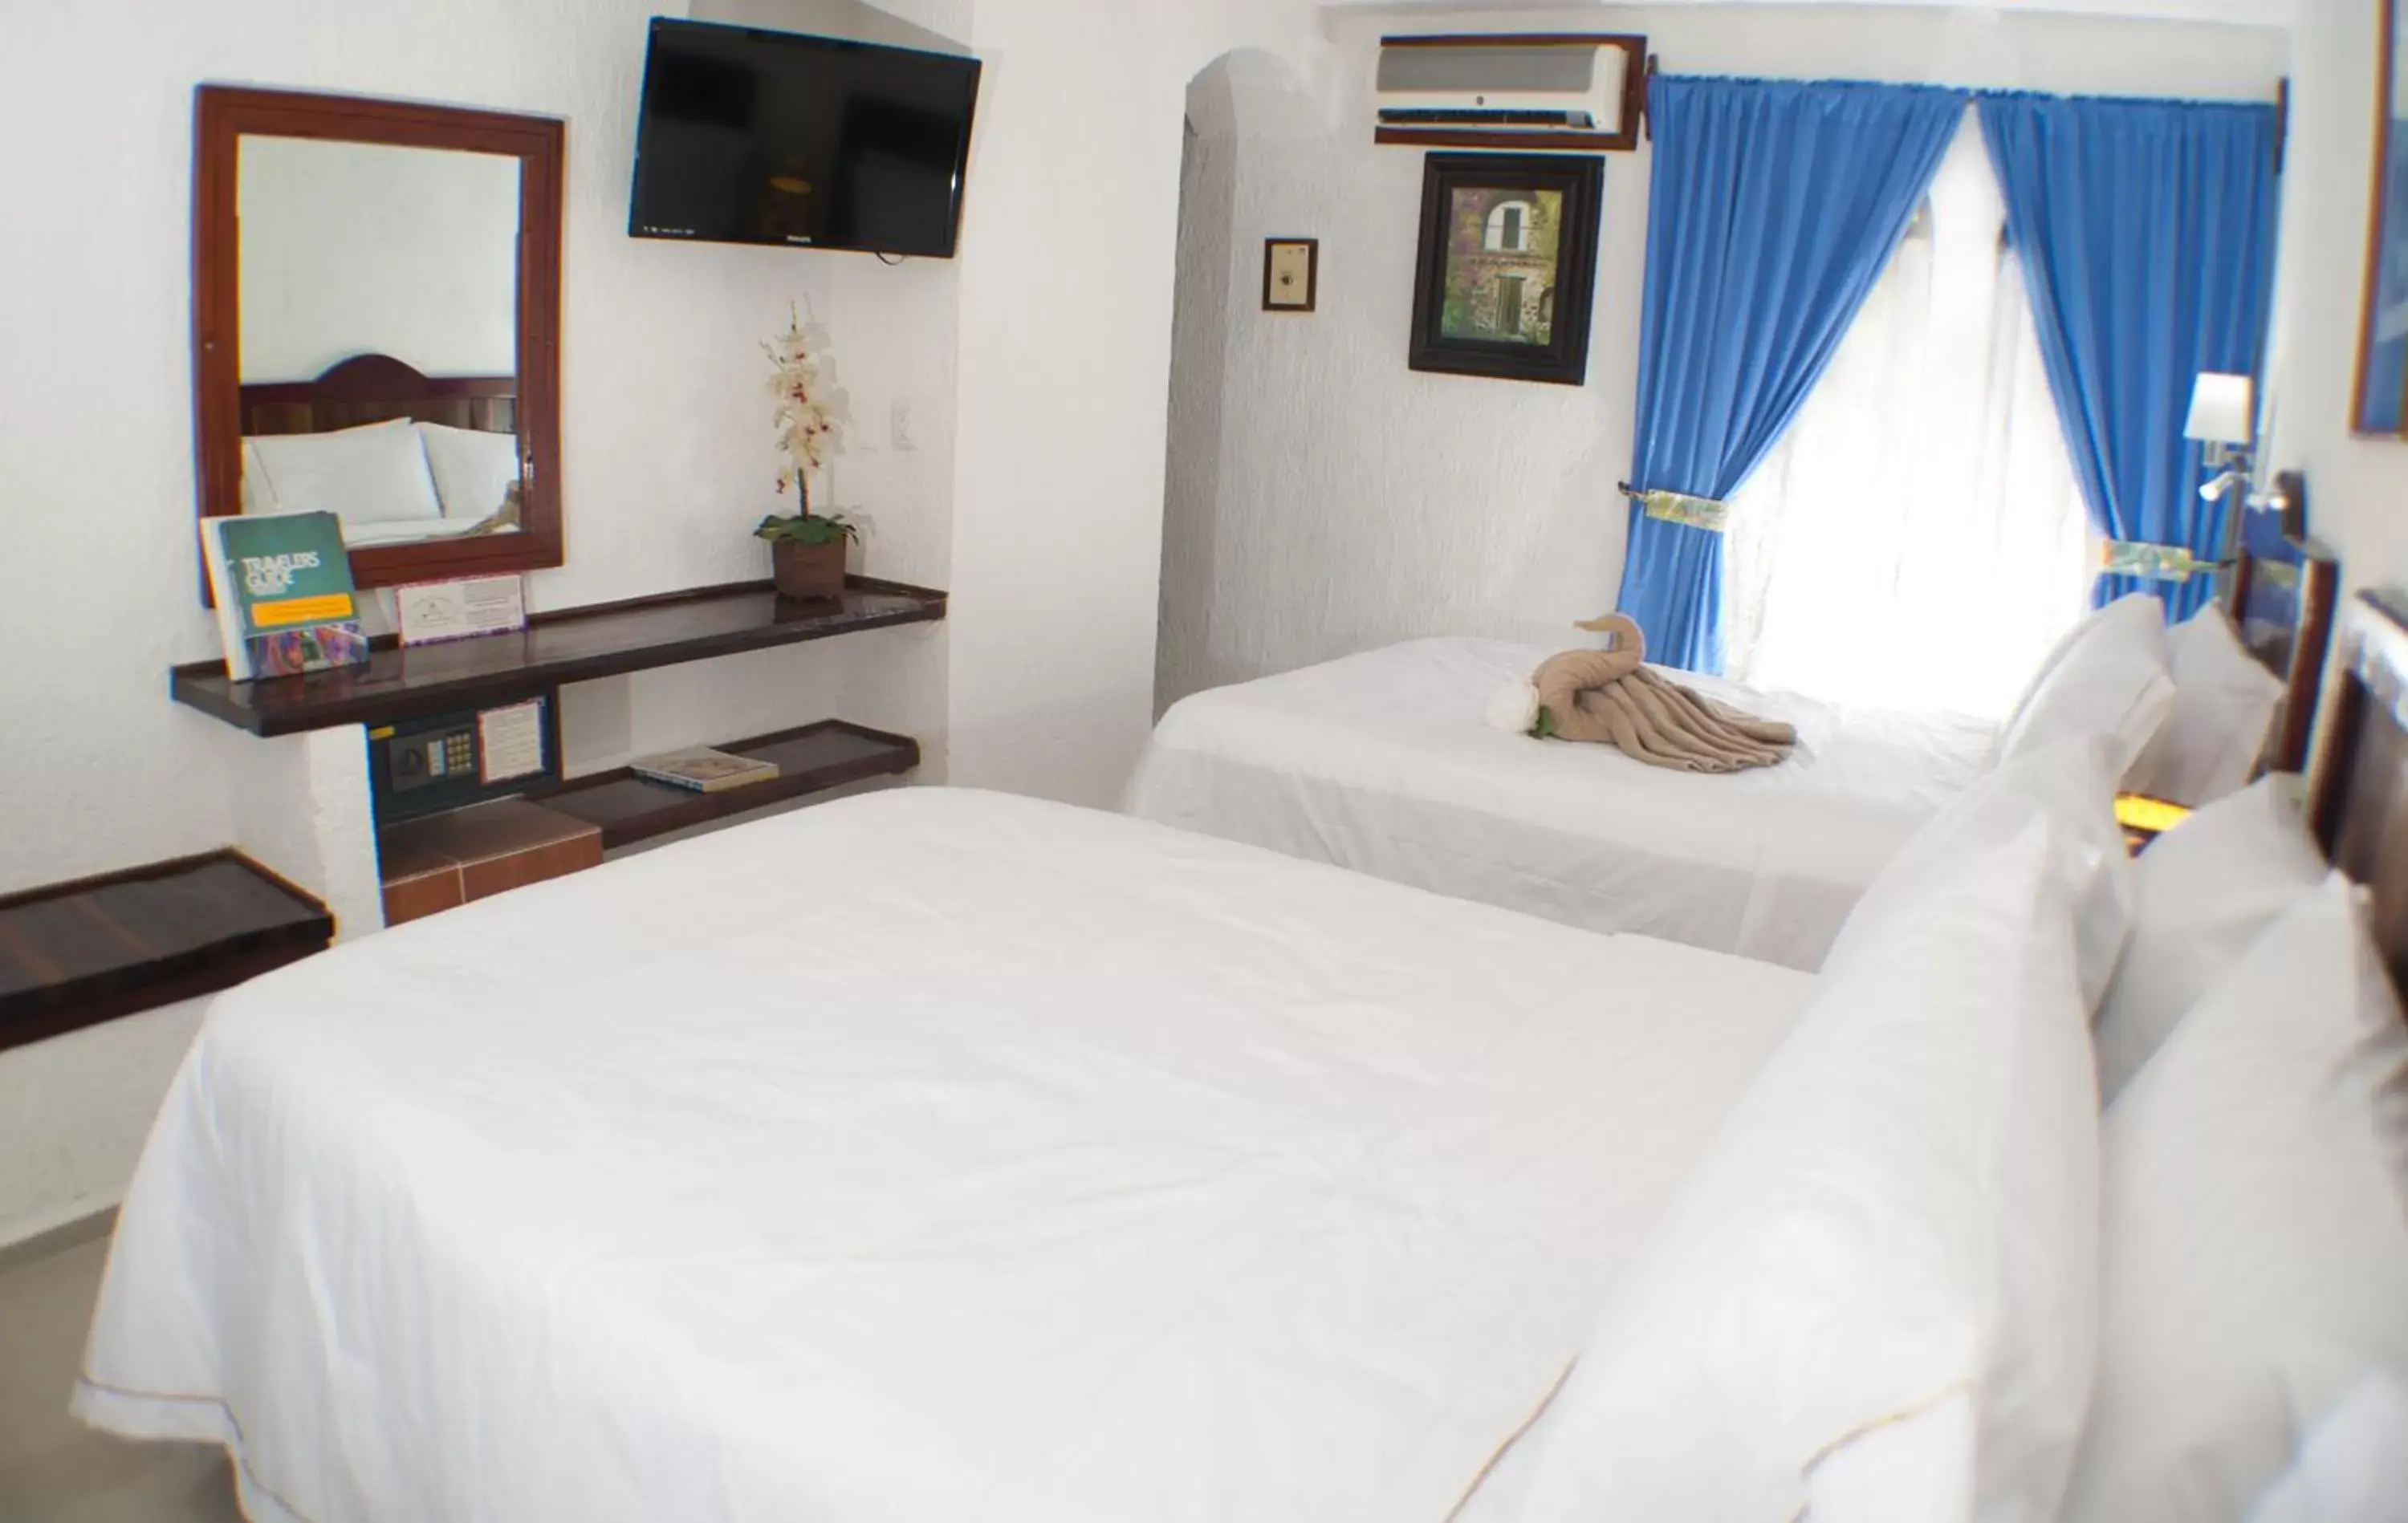 Bedroom, Room Photo in Eco-hotel El Rey del Caribe